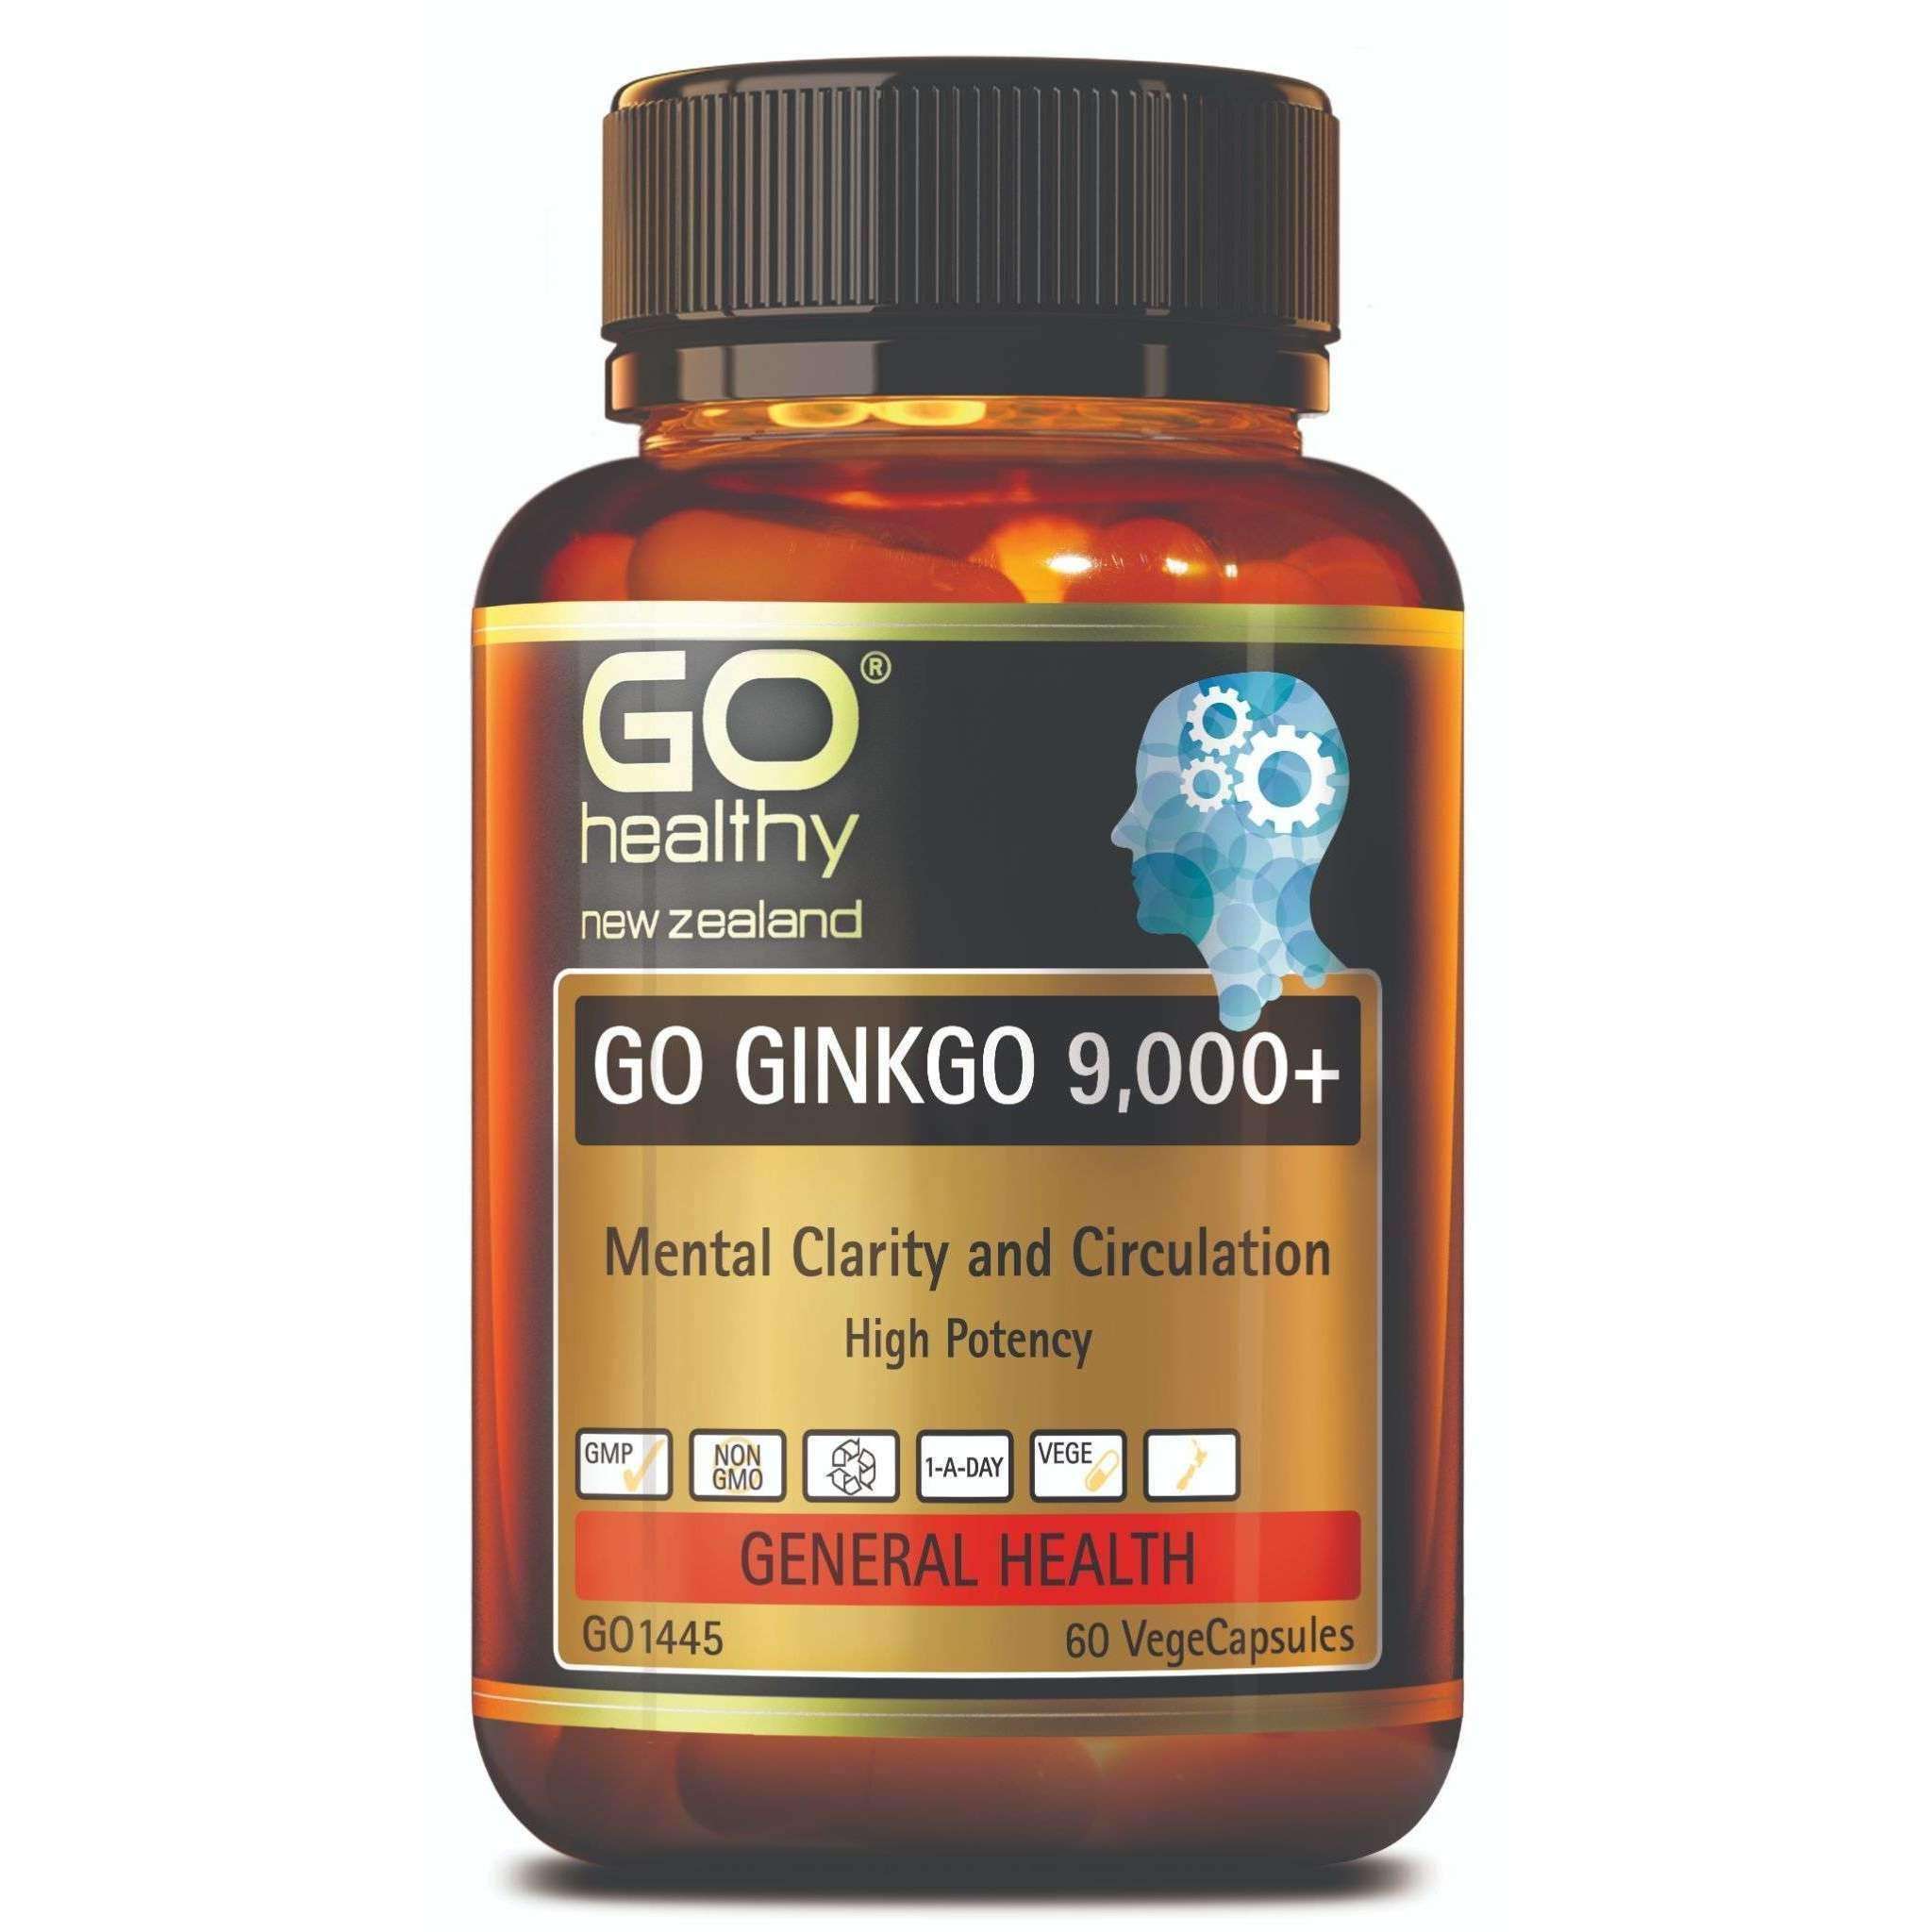 Go Healthy Go Ginkgo 9,000+